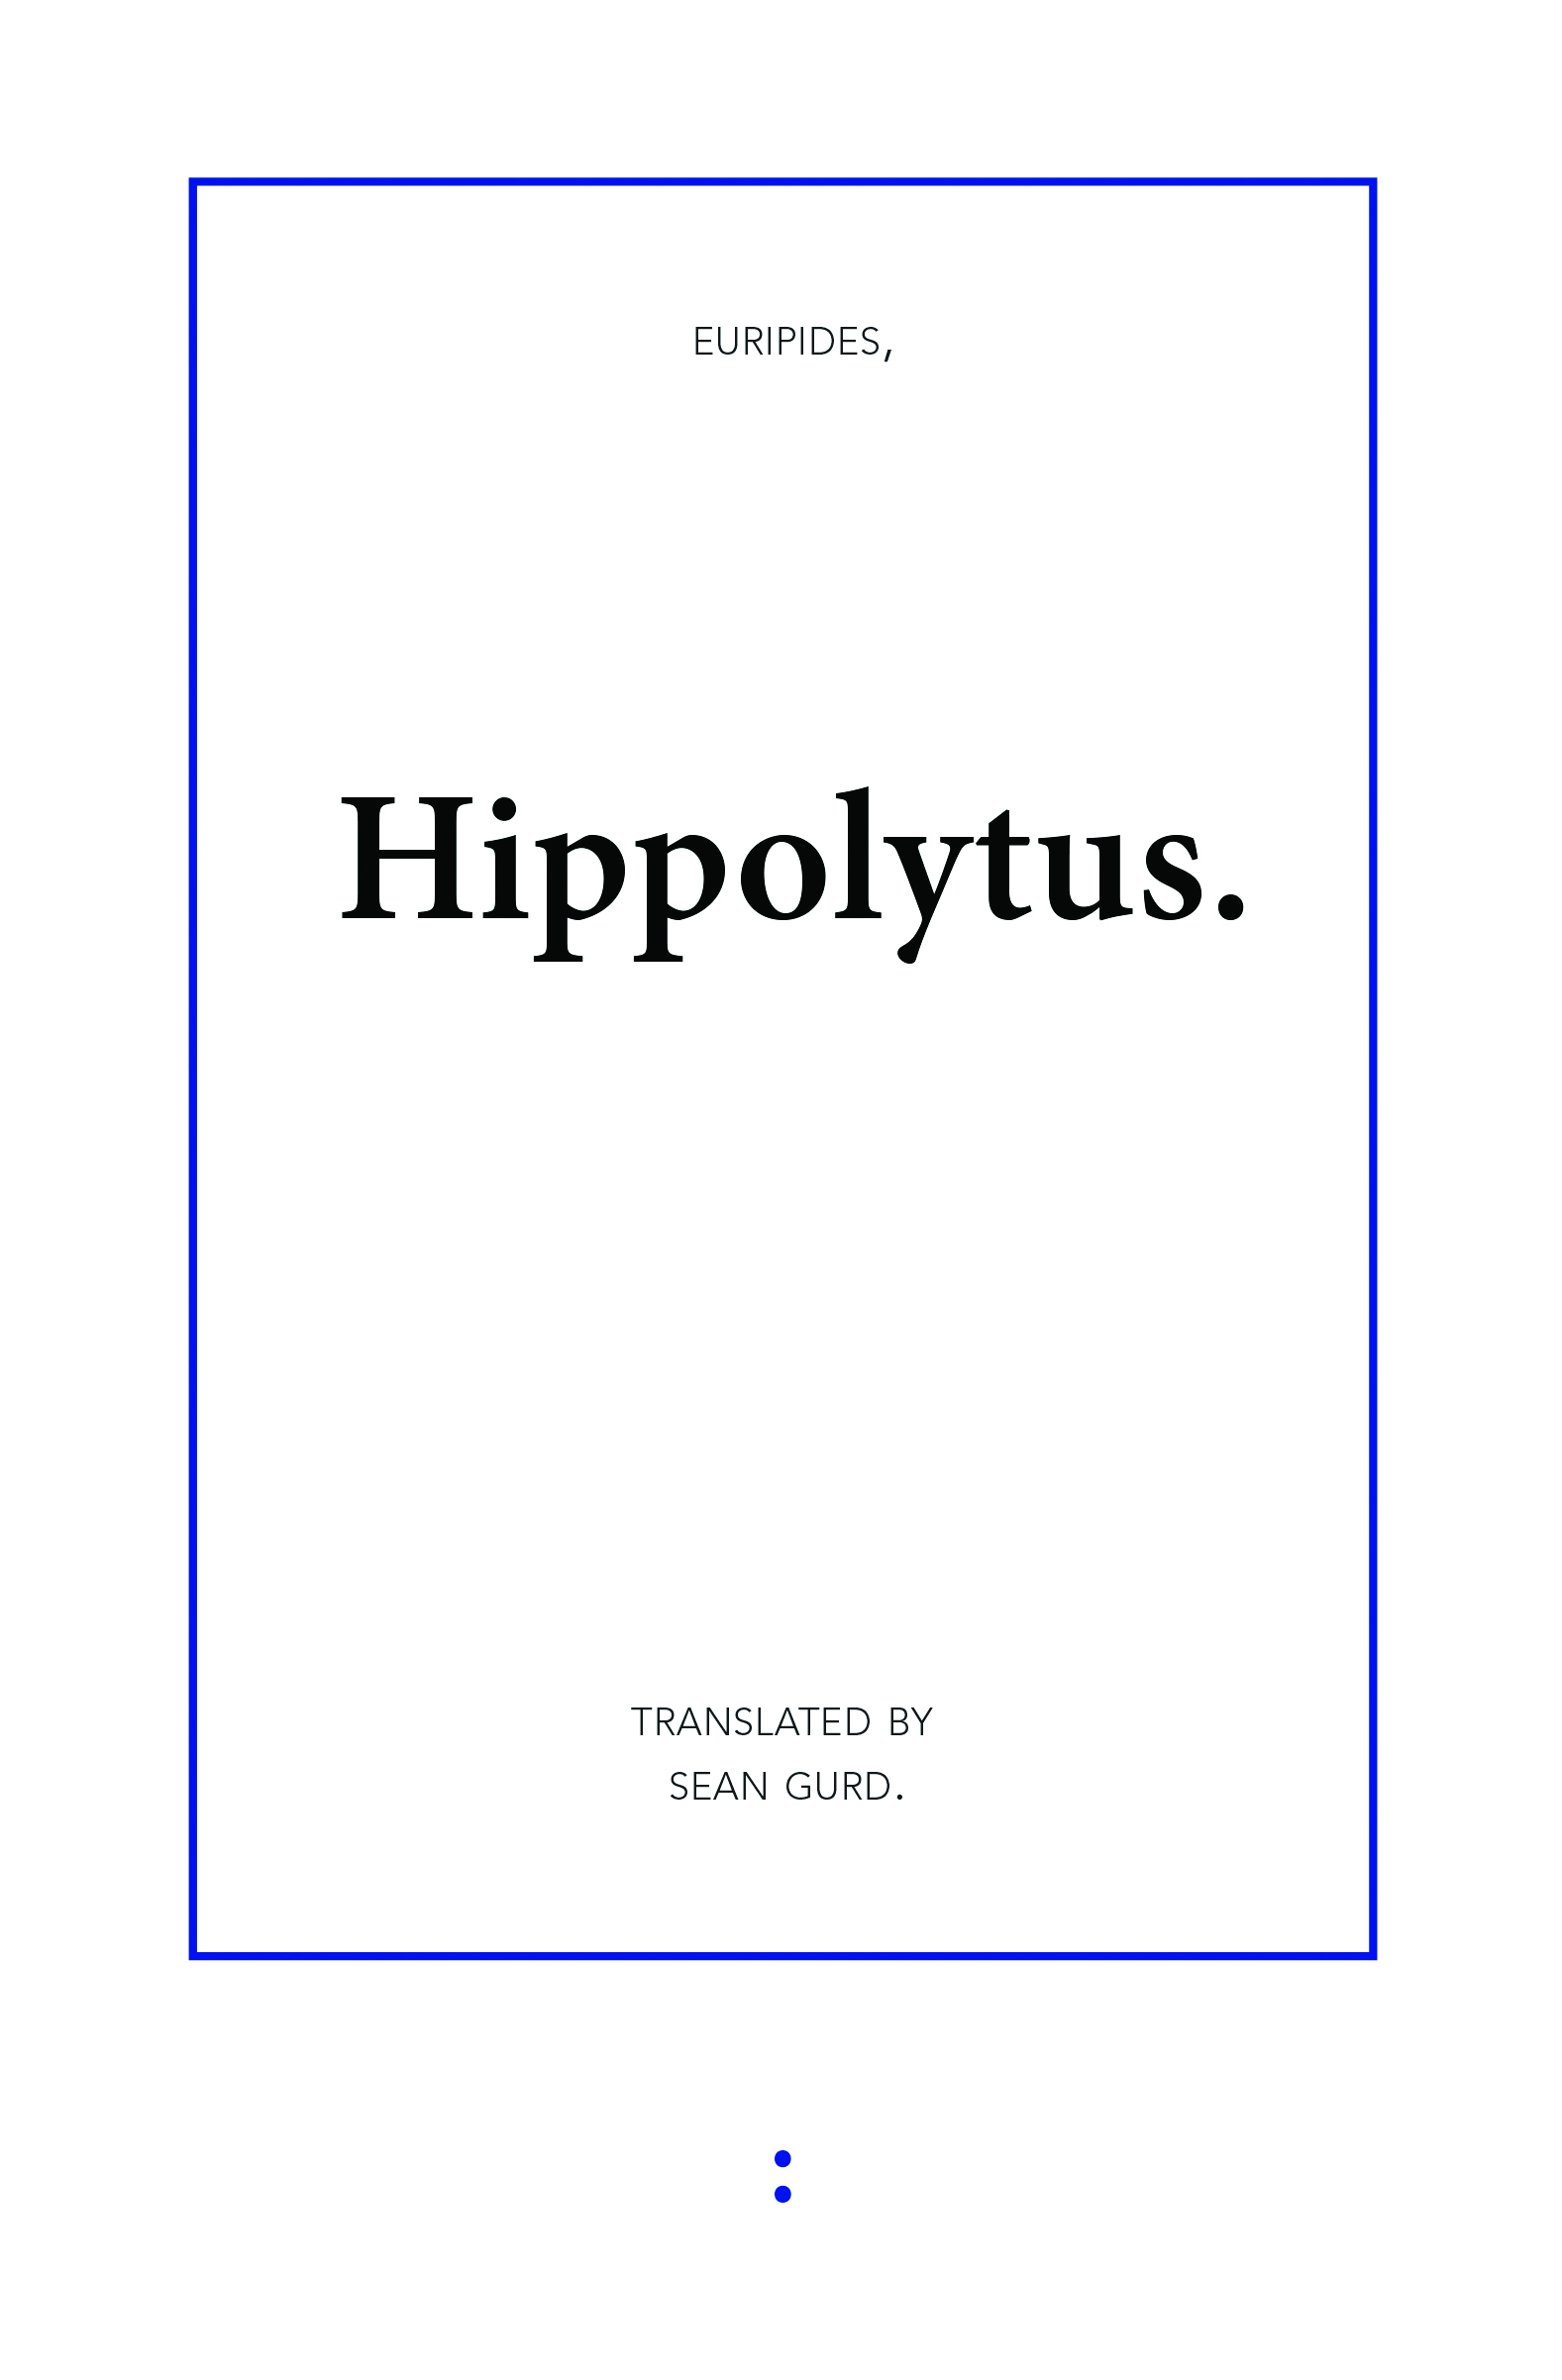 Hippolytus (punctum books, 2012)